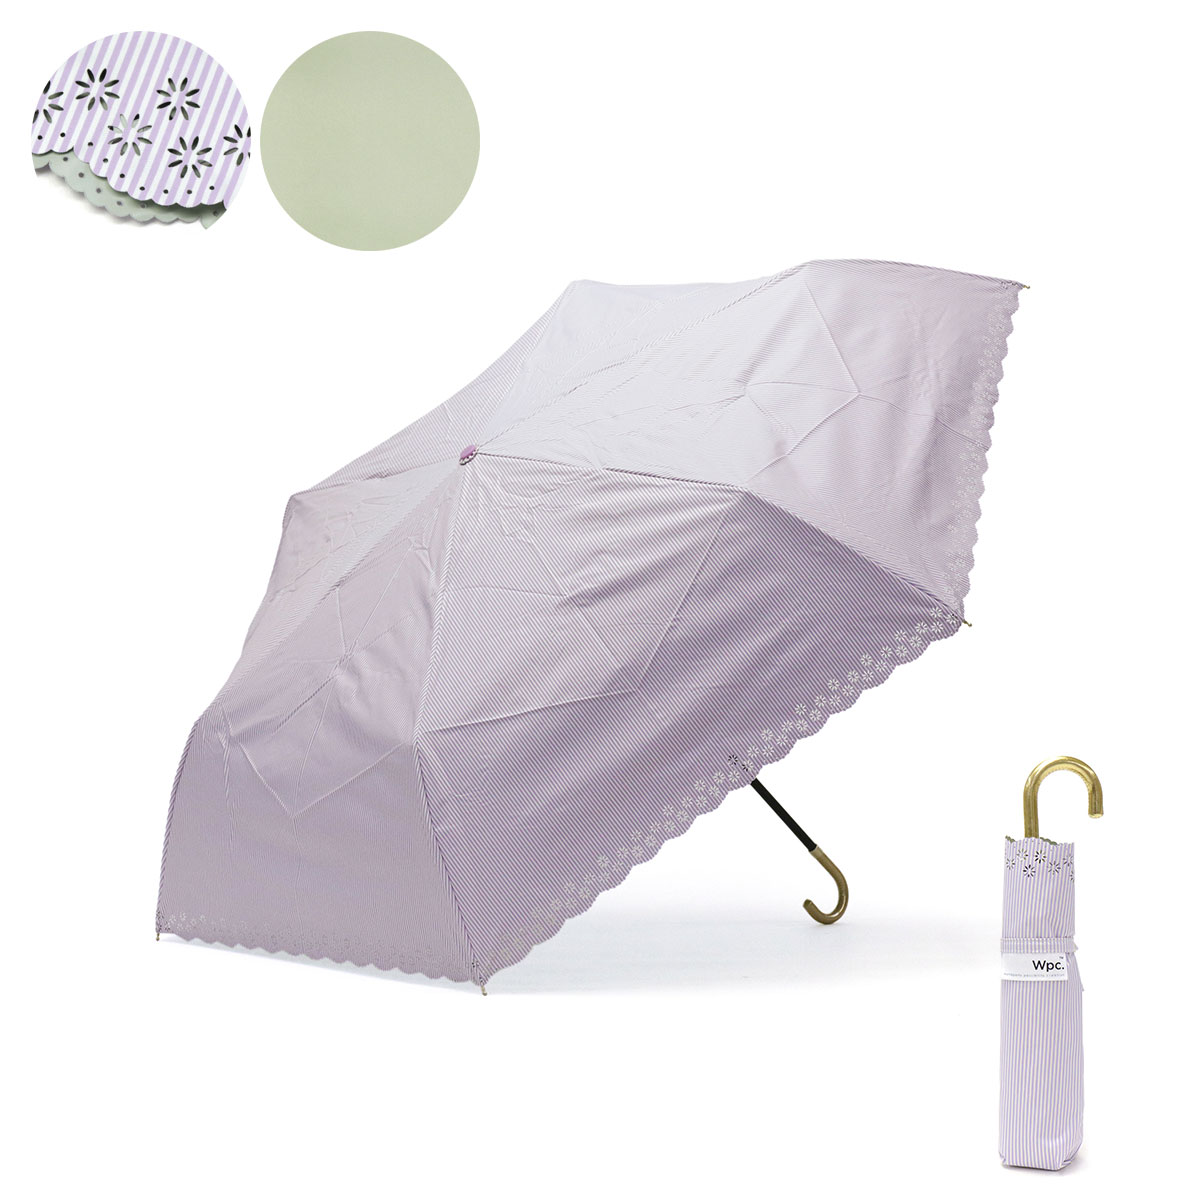 ダブリュピーシー 日傘 Wpc. Wpc 遮光フラワーカットストライプ 雨傘 折り畳み傘 晴雨兼用 ...